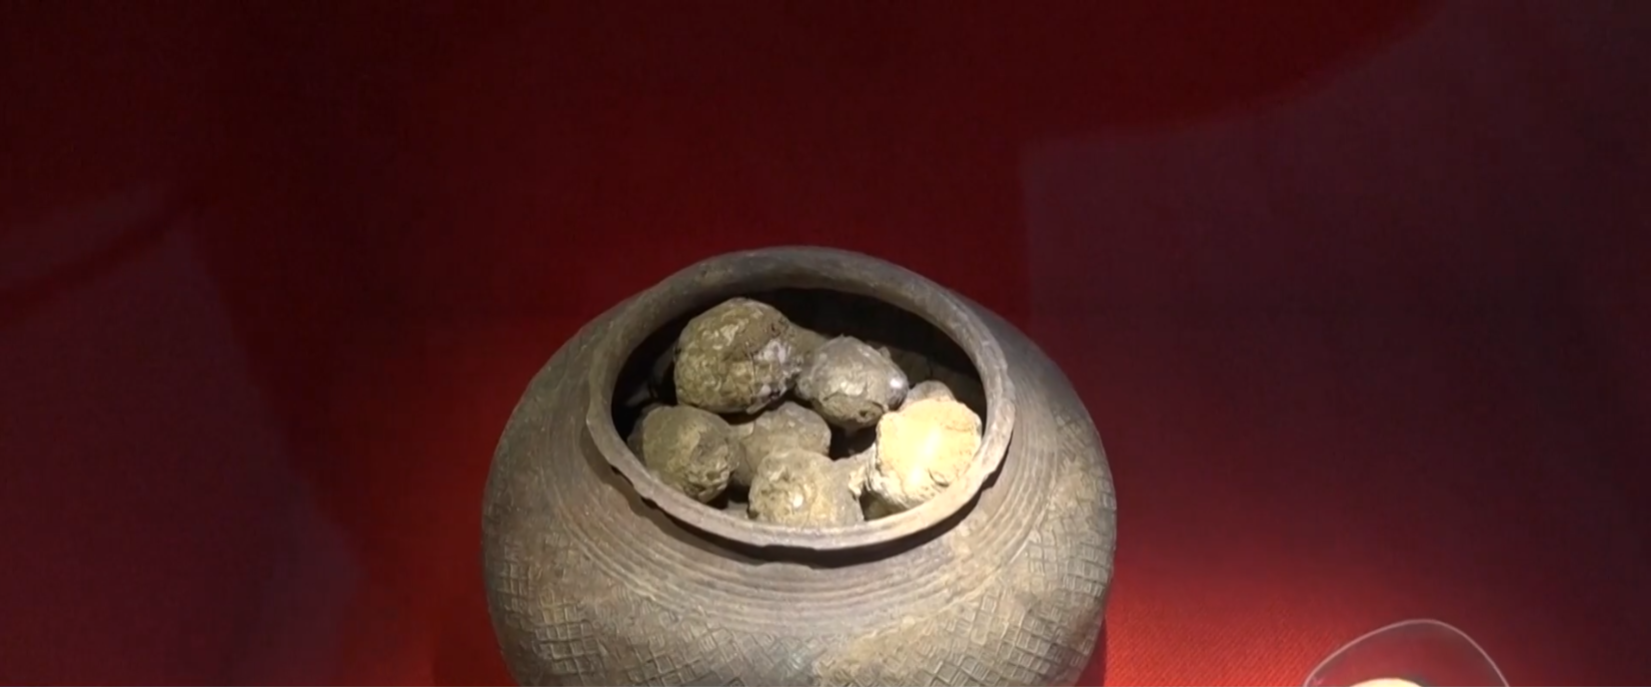 Музеят в Нанкин в източната китайска провинция Дзянсу отбелязва 90-годишнината